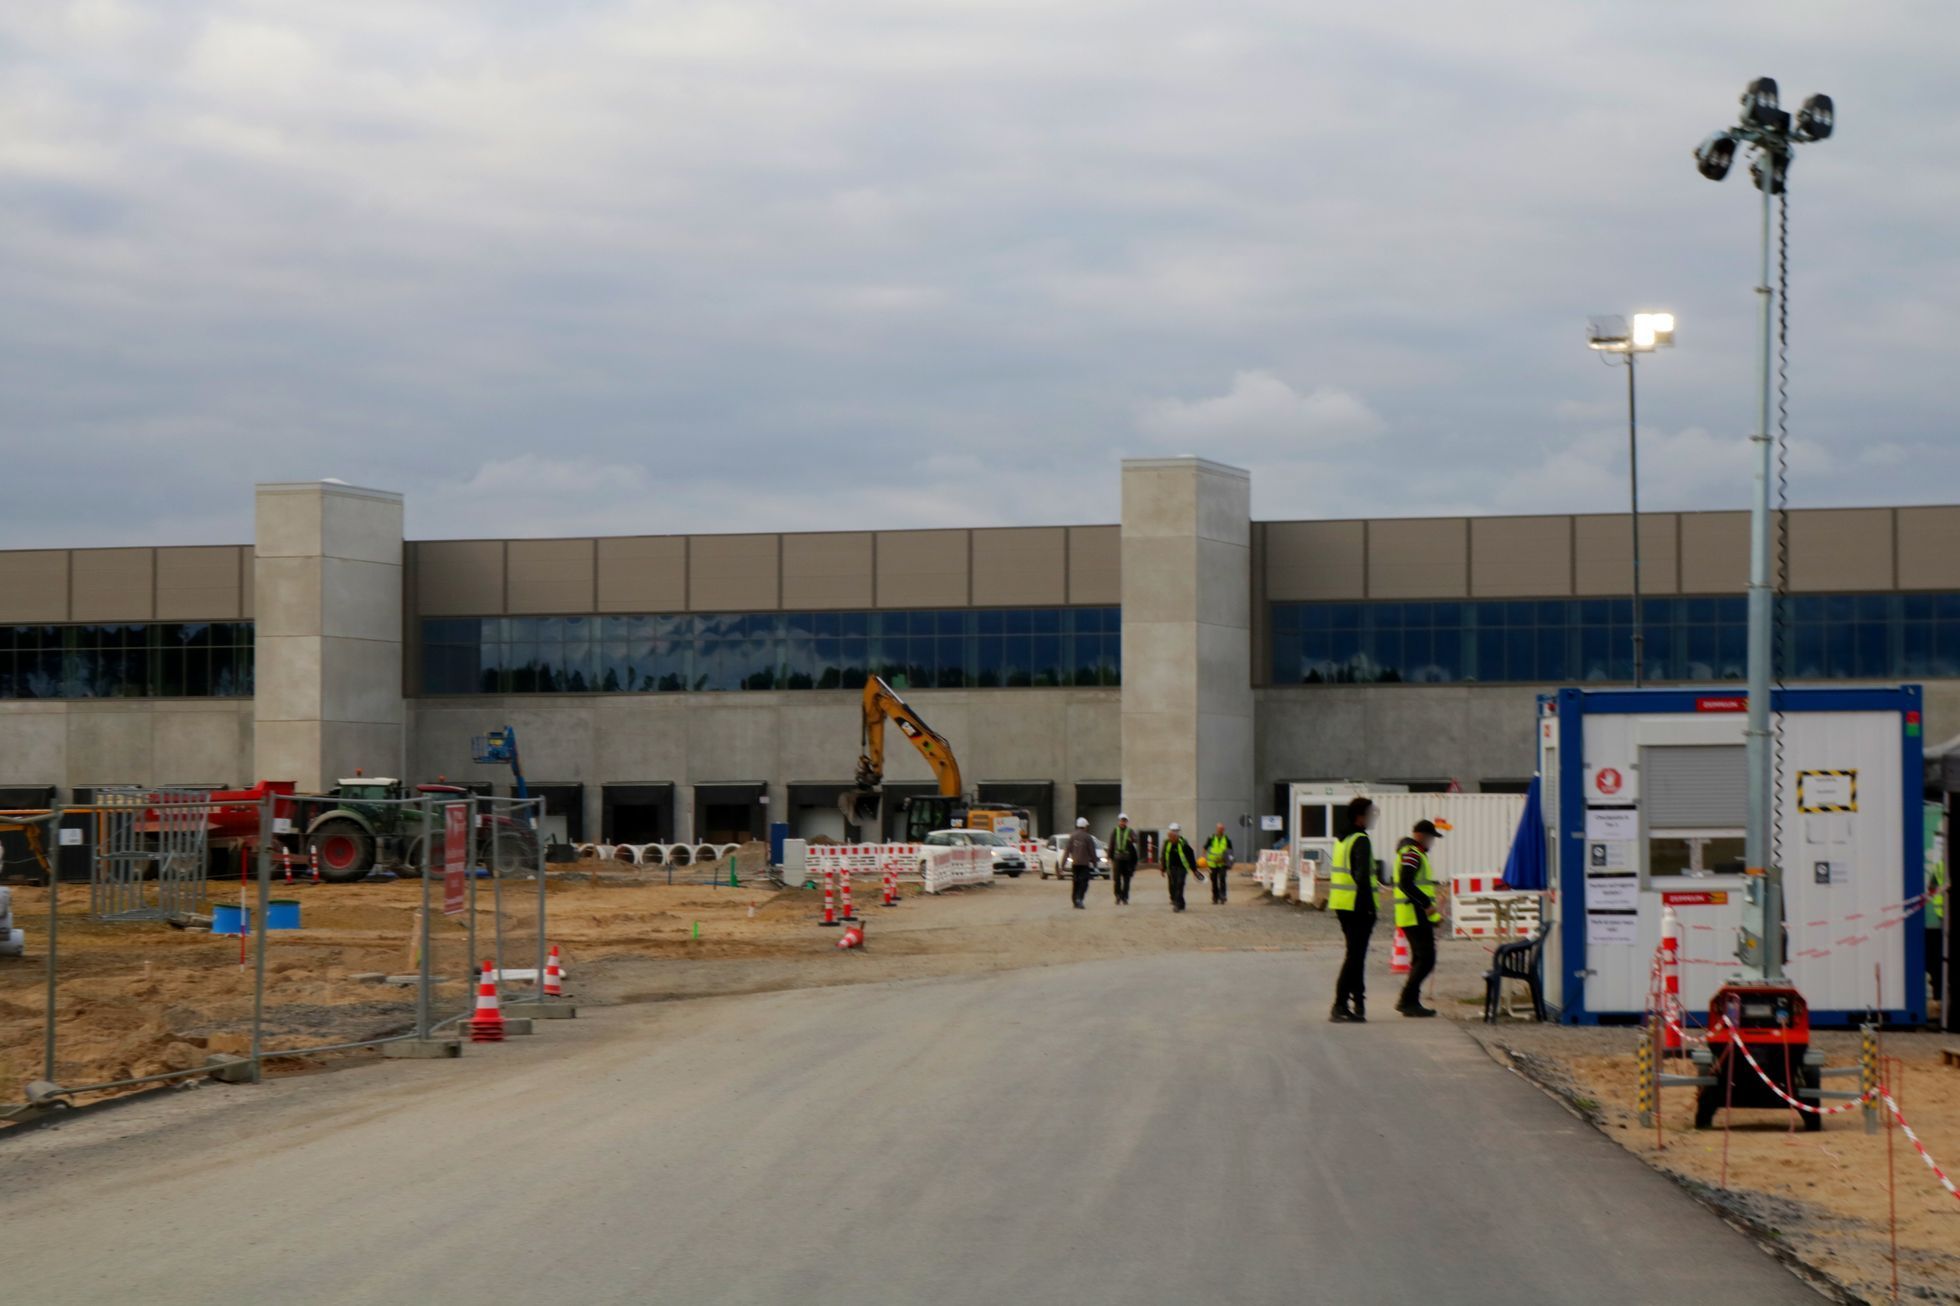 Tesla výstavba továrny Gigafactory u Berlína září 2021